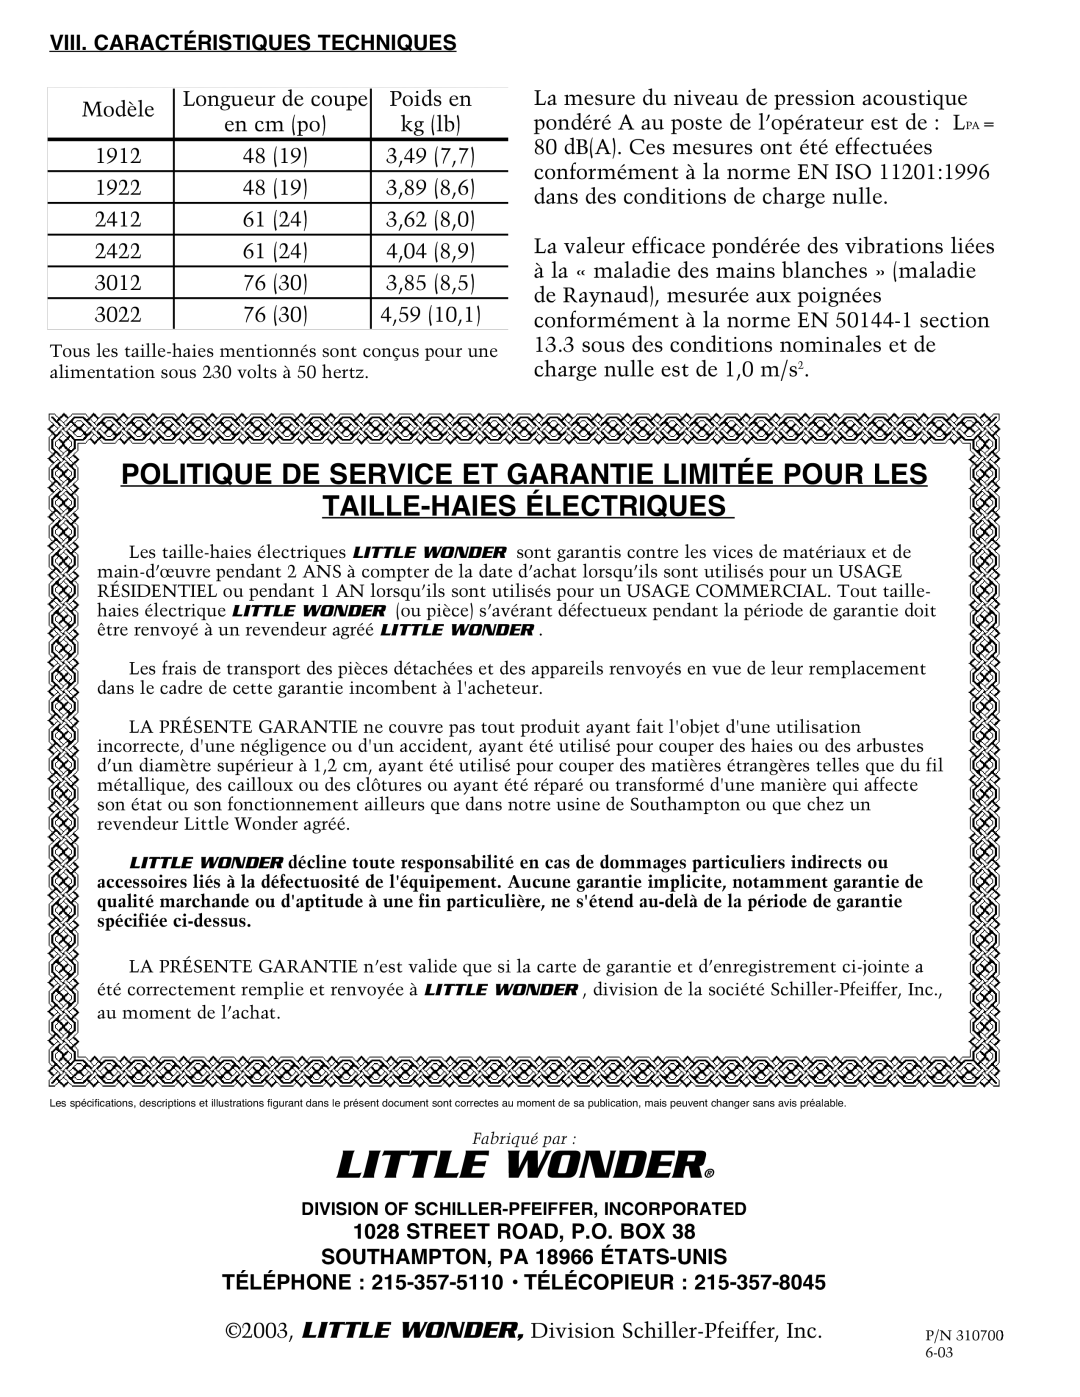 Little Wonder 1920, 3022 Politique De Service Et Garantie Limitée Pour Les, Taille-Haiesélectriques, Street Road, P.O. Box 